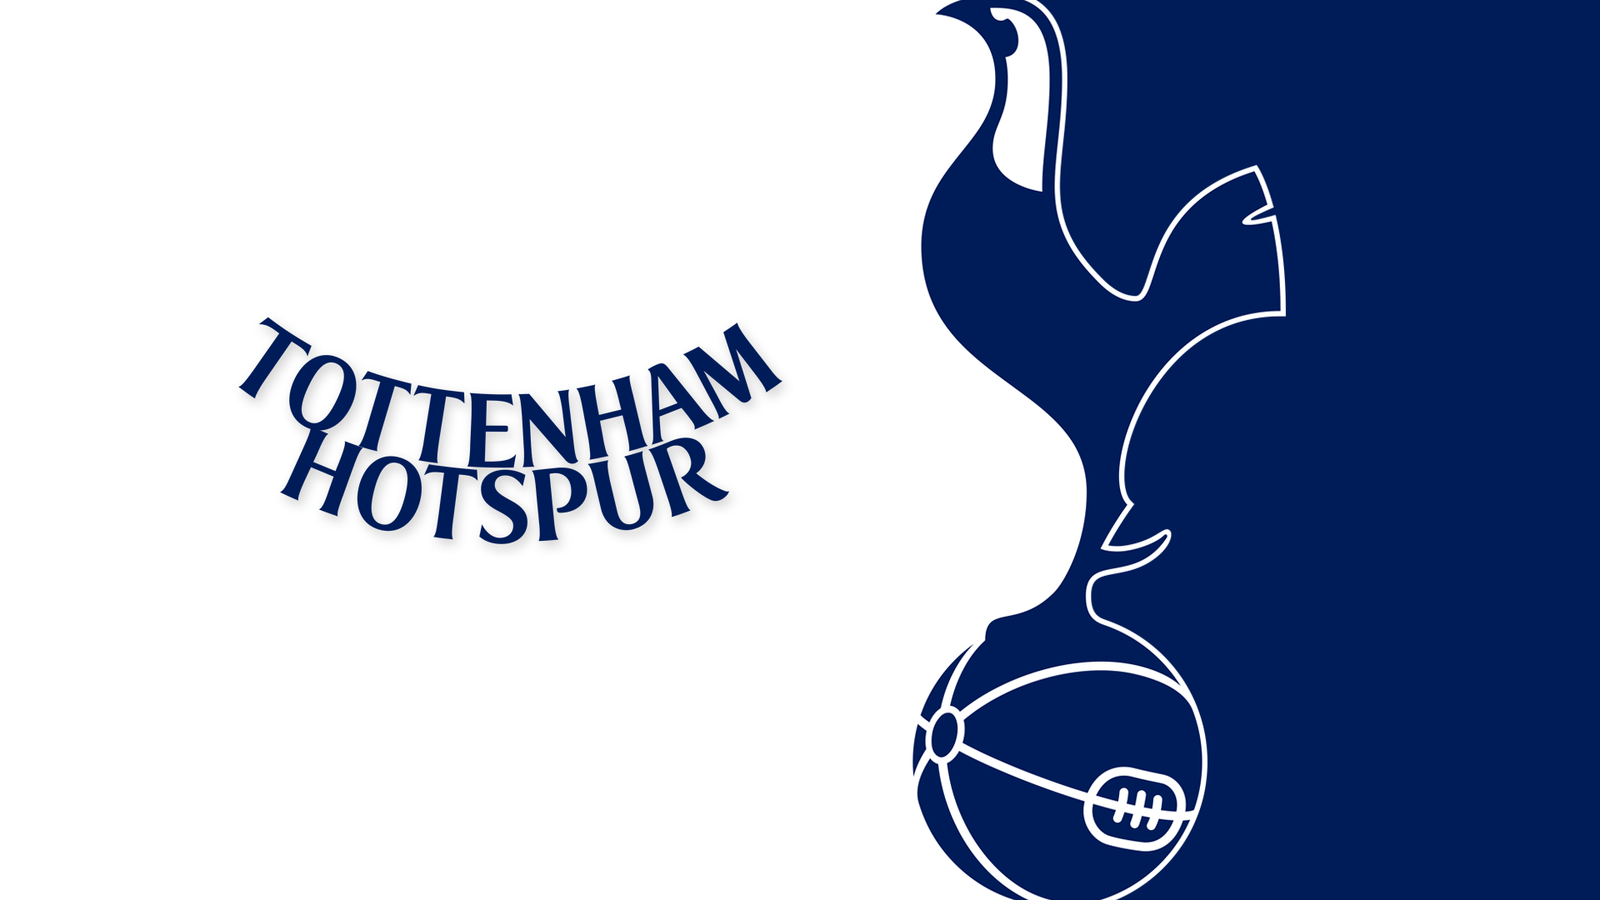 Tottenham Hotspur For iPhone, tottenham logo HD phone wallpaper | Pxfuel